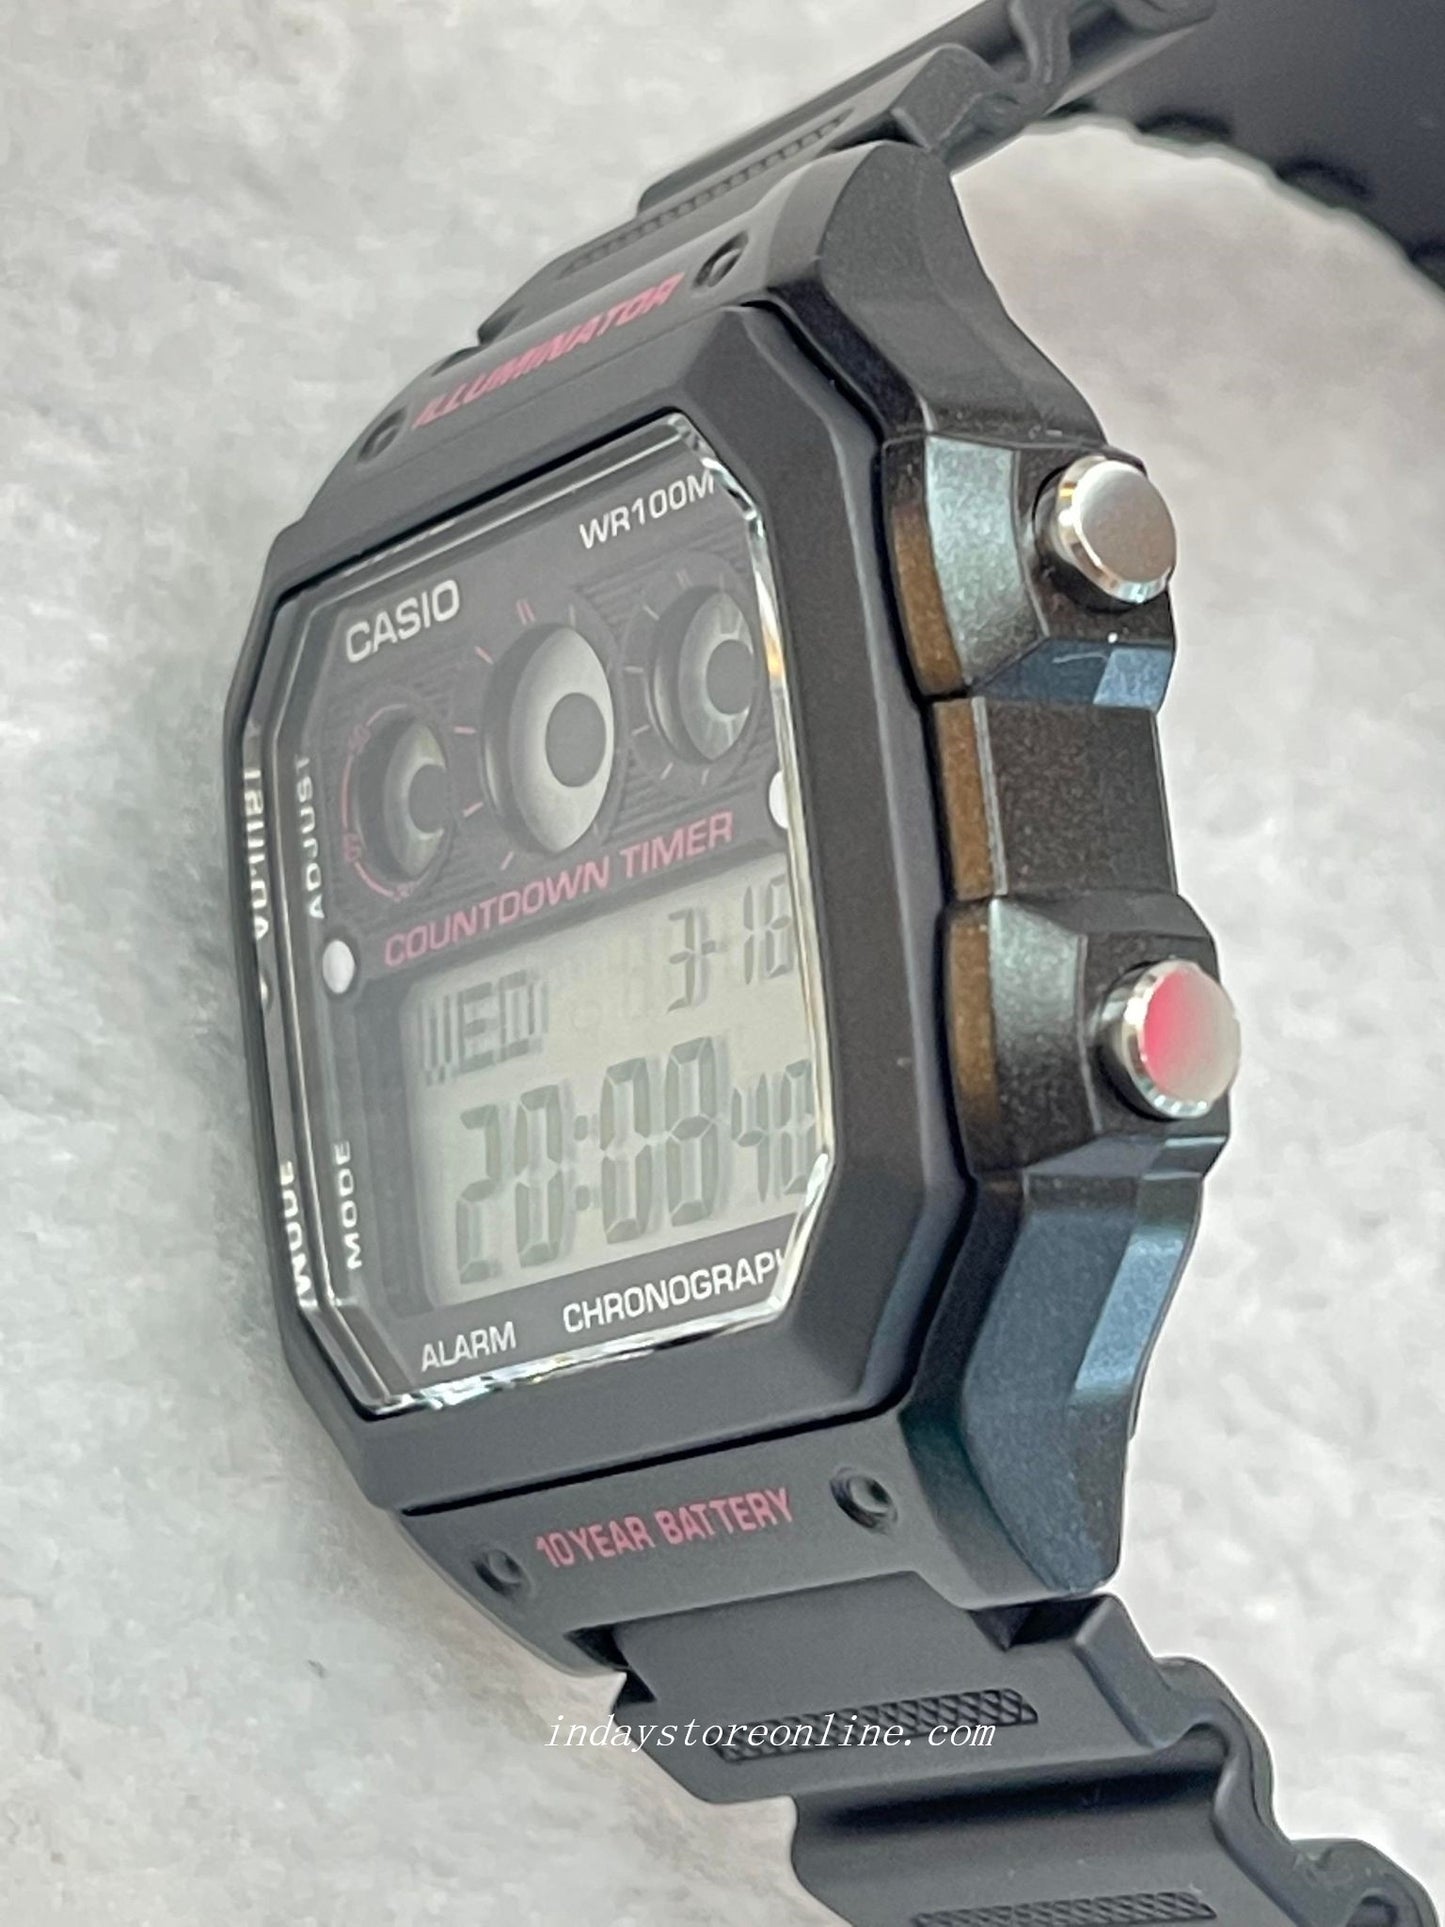 Casio Digital Men's Watch AE-1300WH-1A2